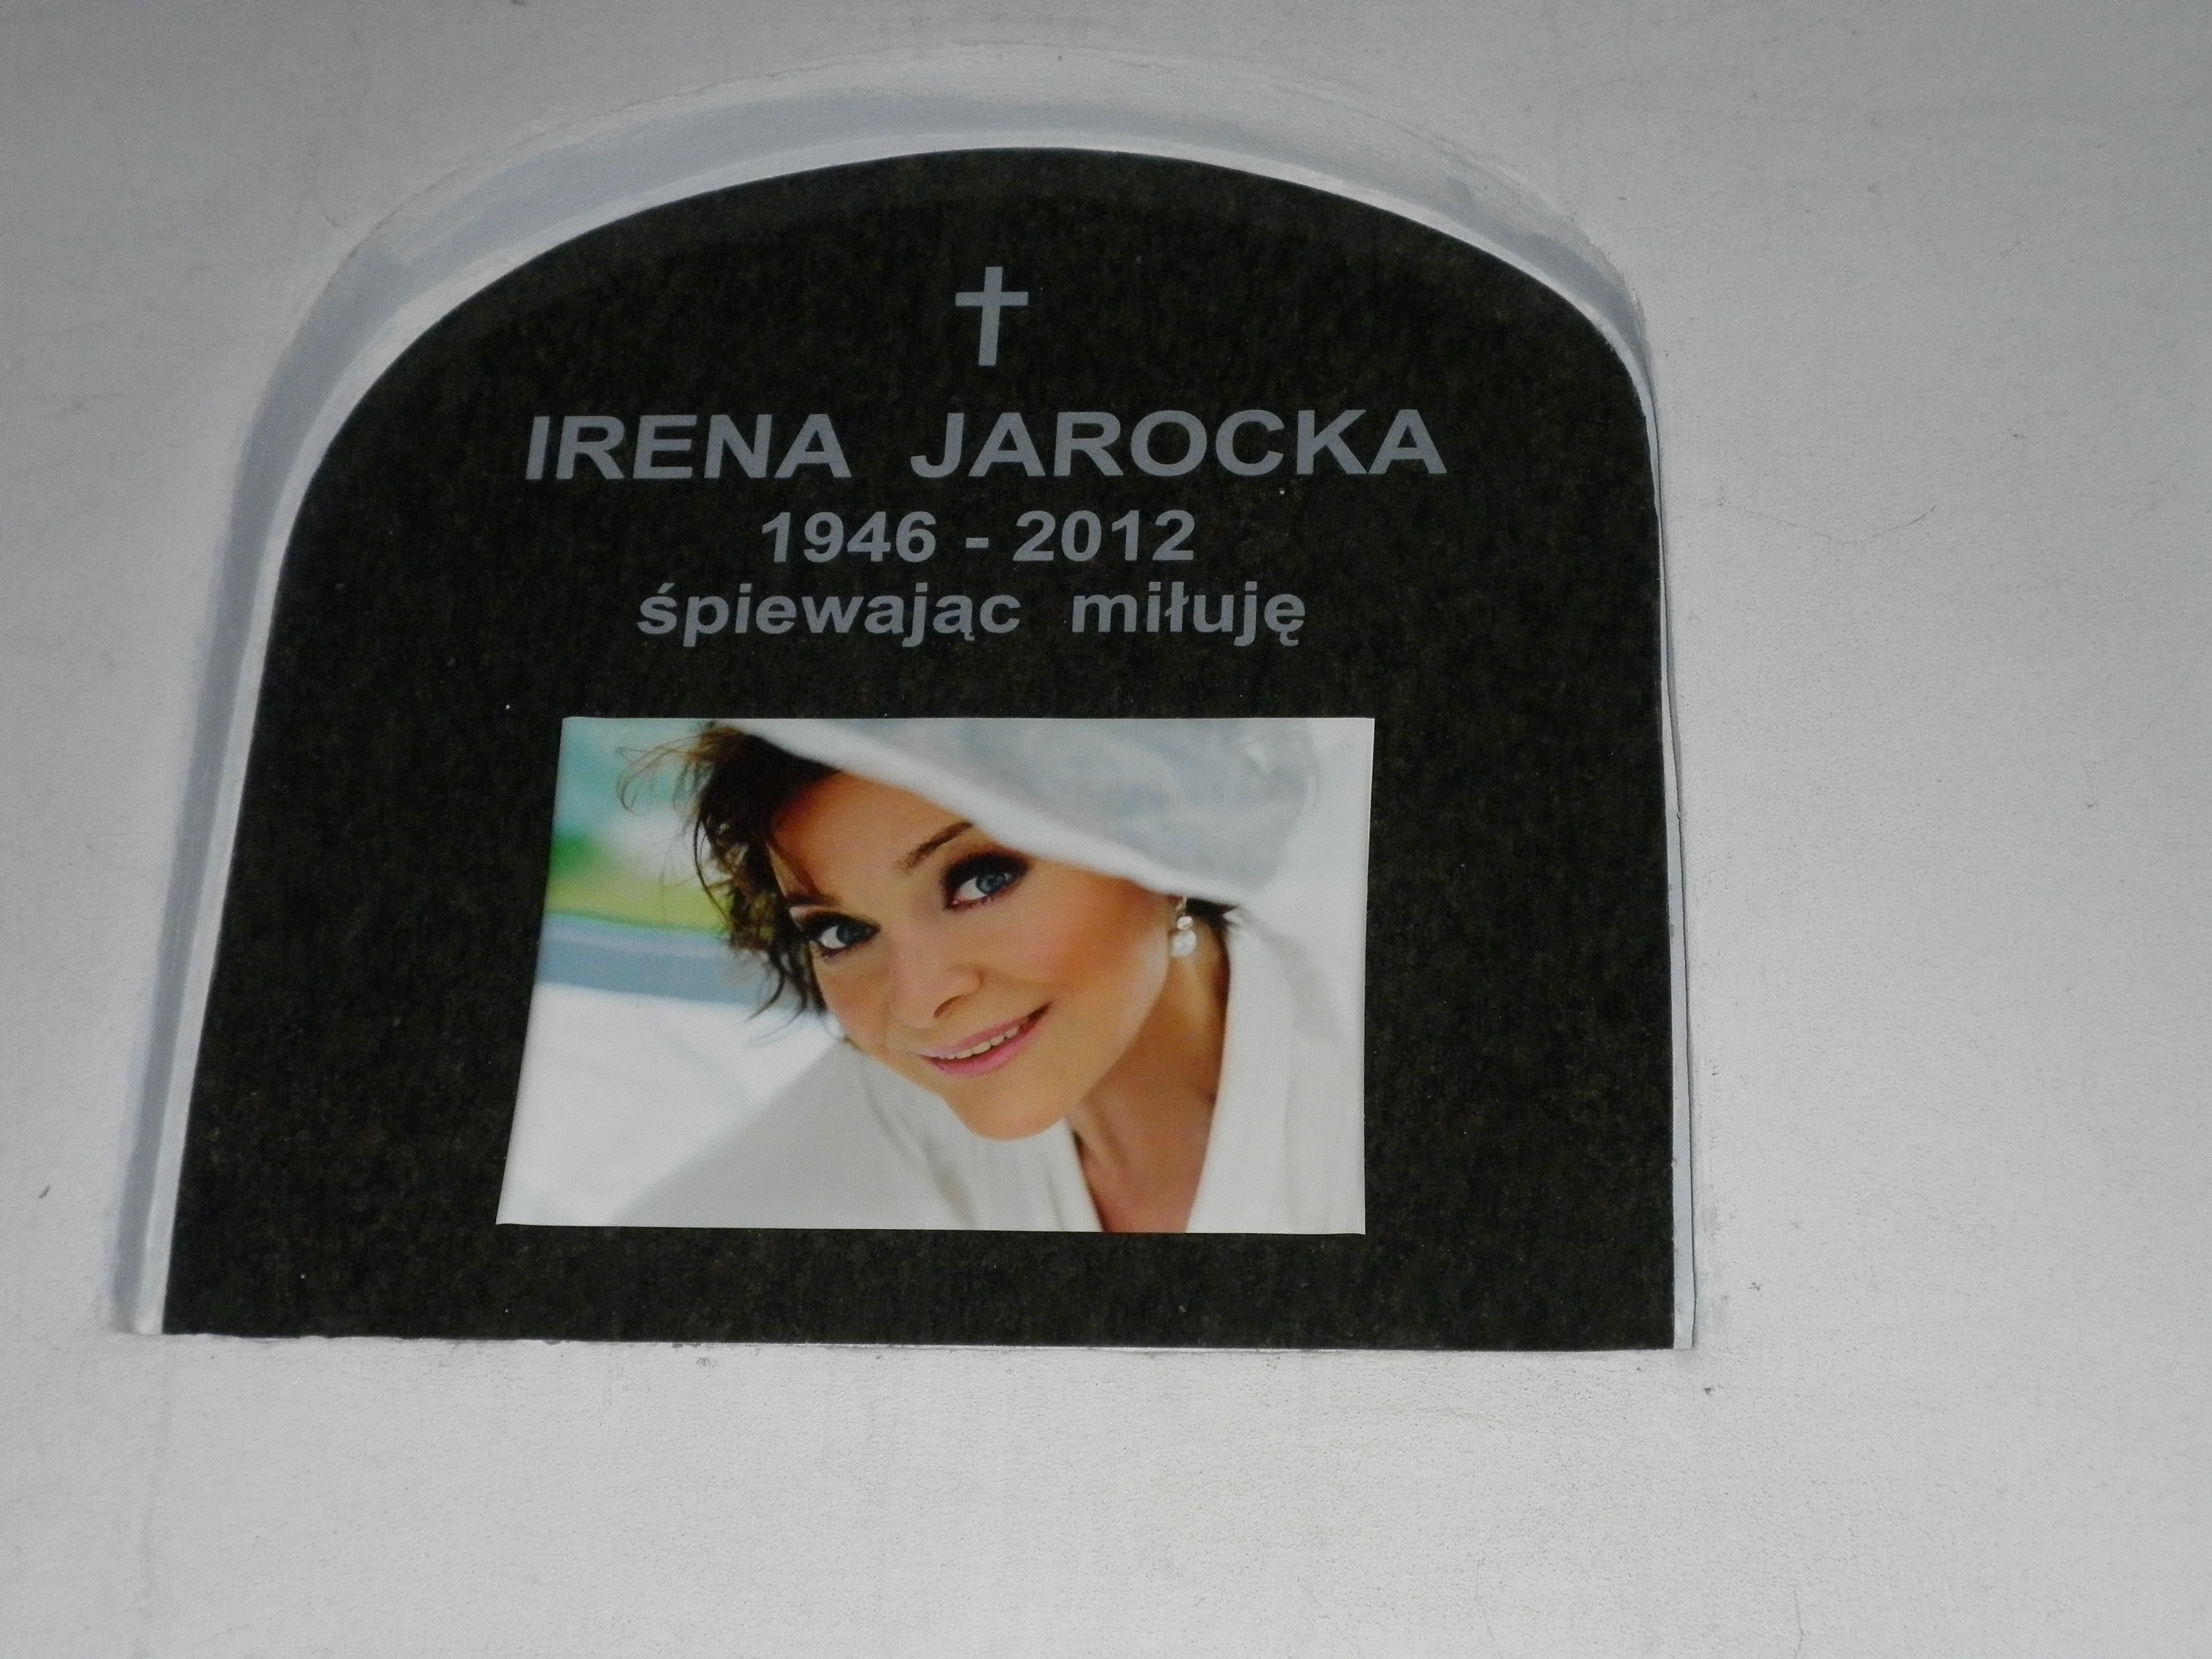 Wikipedia, FoP-Poland, Irena Jarocka, Powzki Cemetery - J, Self-published work